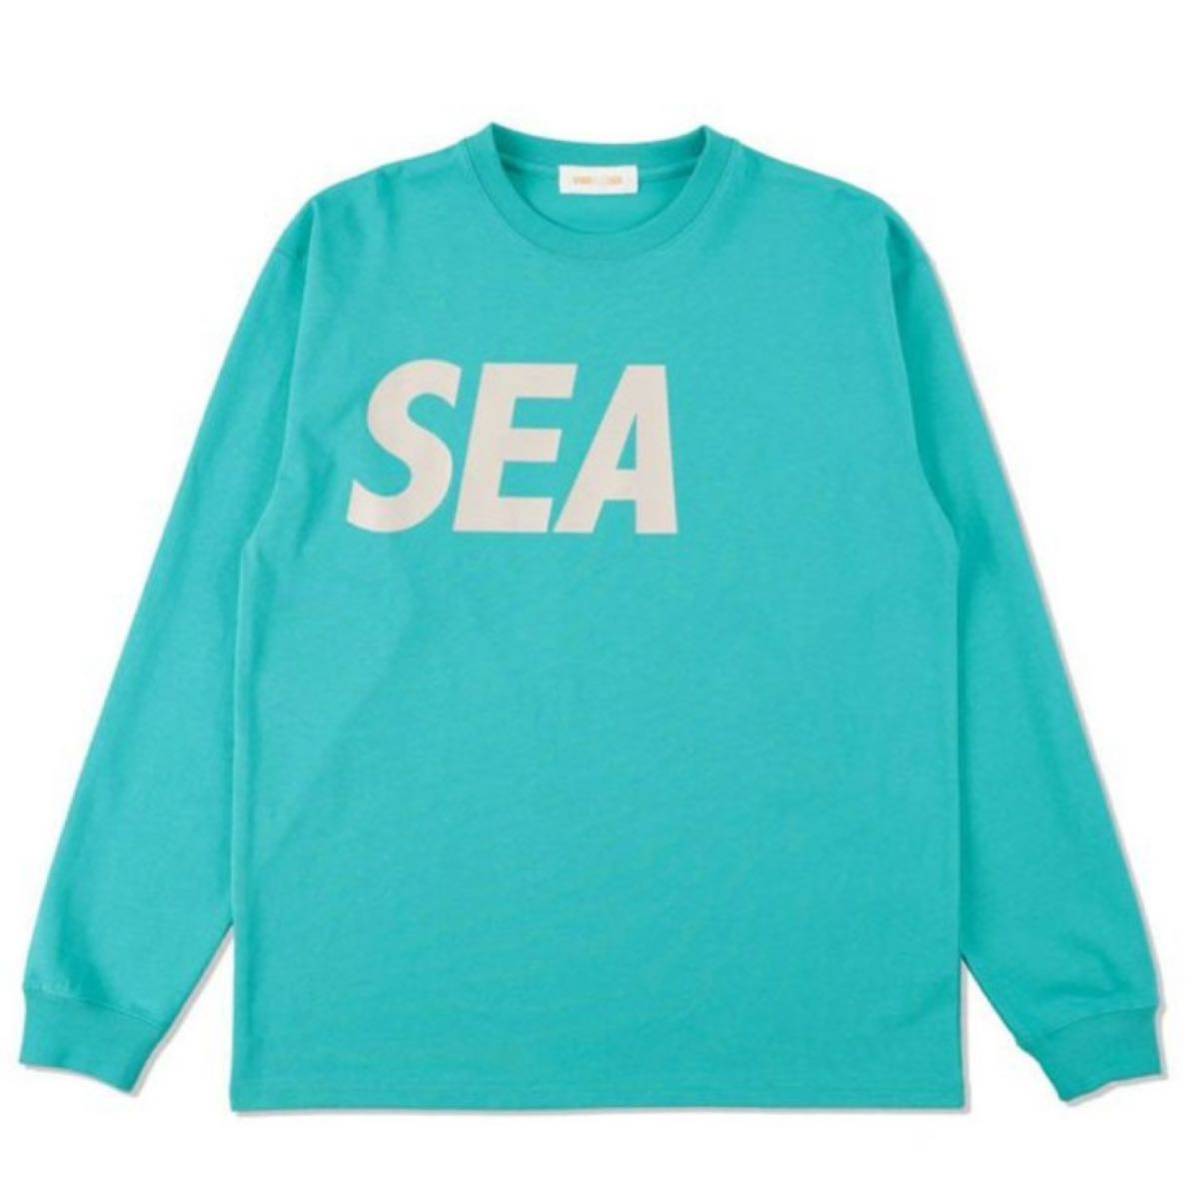 WIND AND SEA Logo L/S Tee SEA L/S T-SHIRT ウイマンダンシー ロンT 長袖Tシャツ デカSEAロゴ ターコイズブルー Lサイズ 大人気のロゴT